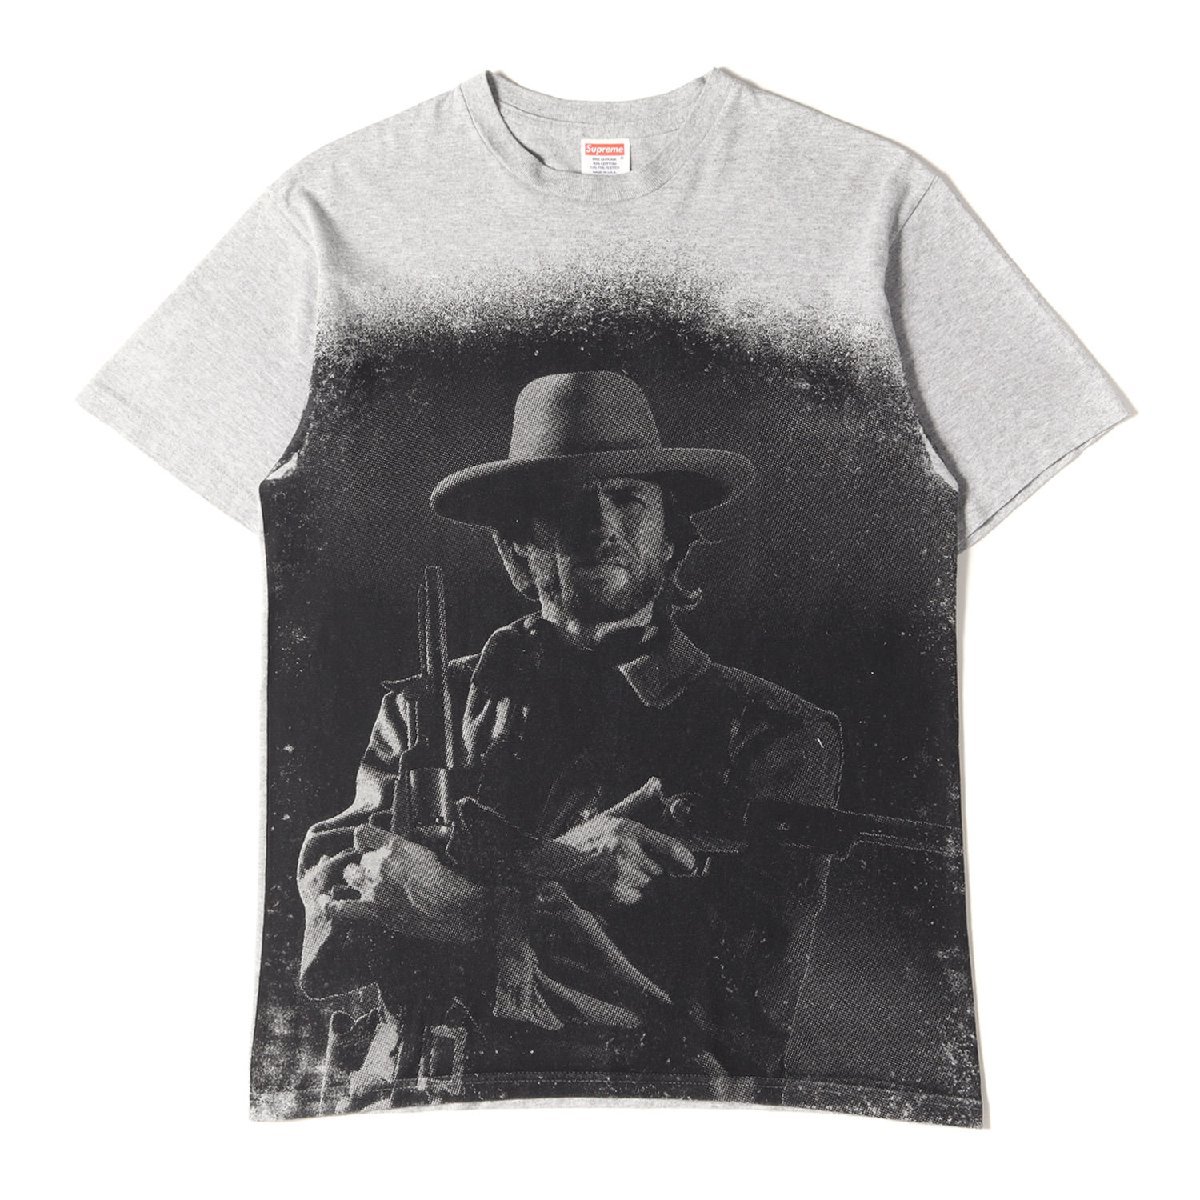 Supreme シュプリーム Tシャツ サイズ:M アウトロー クリント・イーストウッド クルーネック 半袖 Tシャツ Outlaw Tee 11AW ヘザーグレー